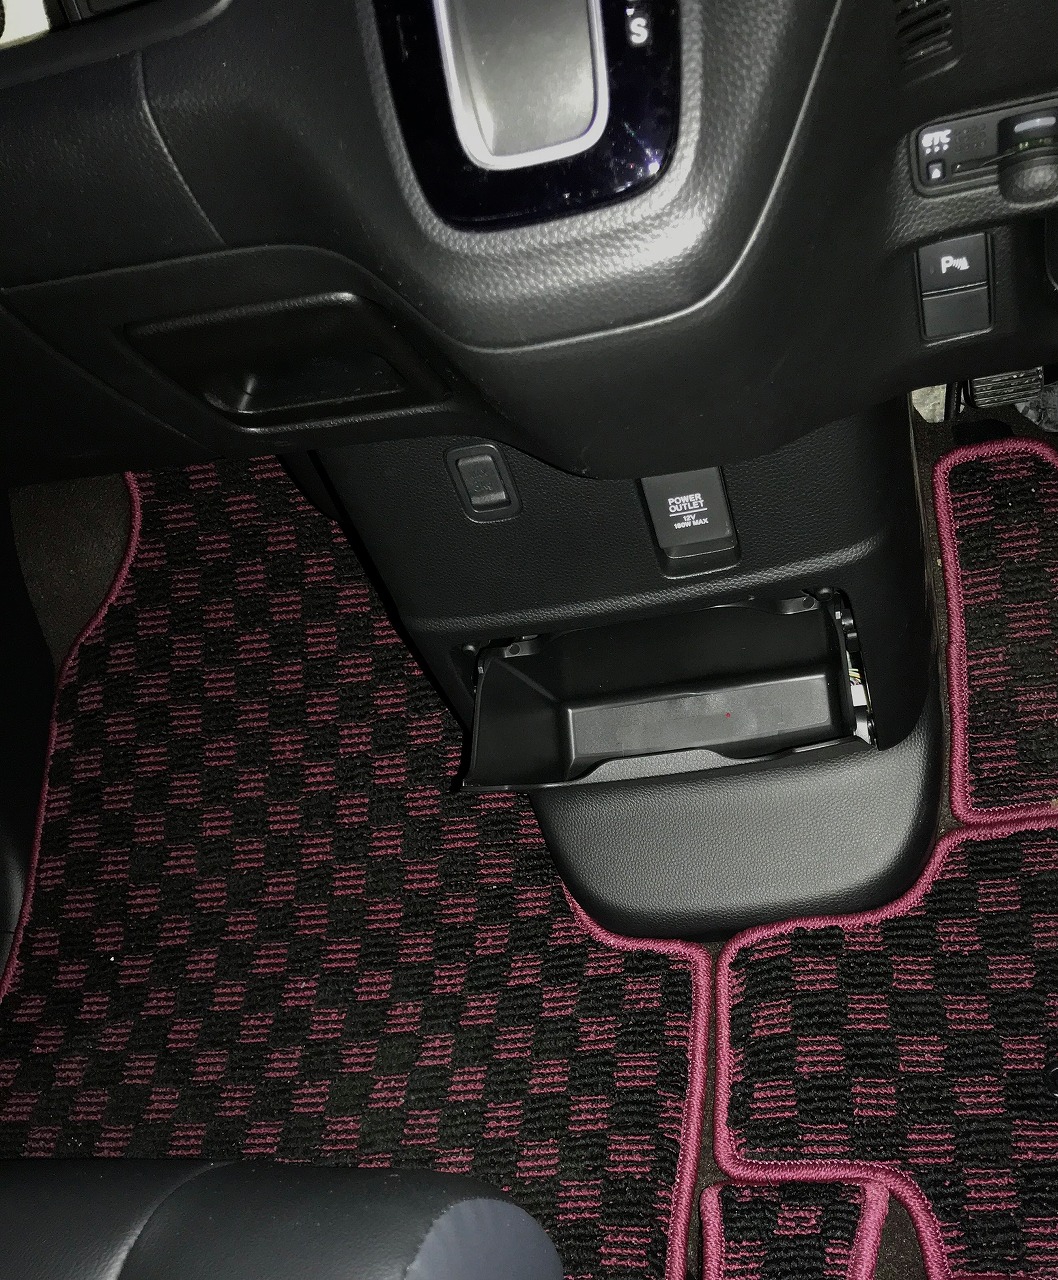 新型n Box N Boxカスタムのベンチシート仕様のみついている便利な装備 N Box For Life Honda N Box Customブログ